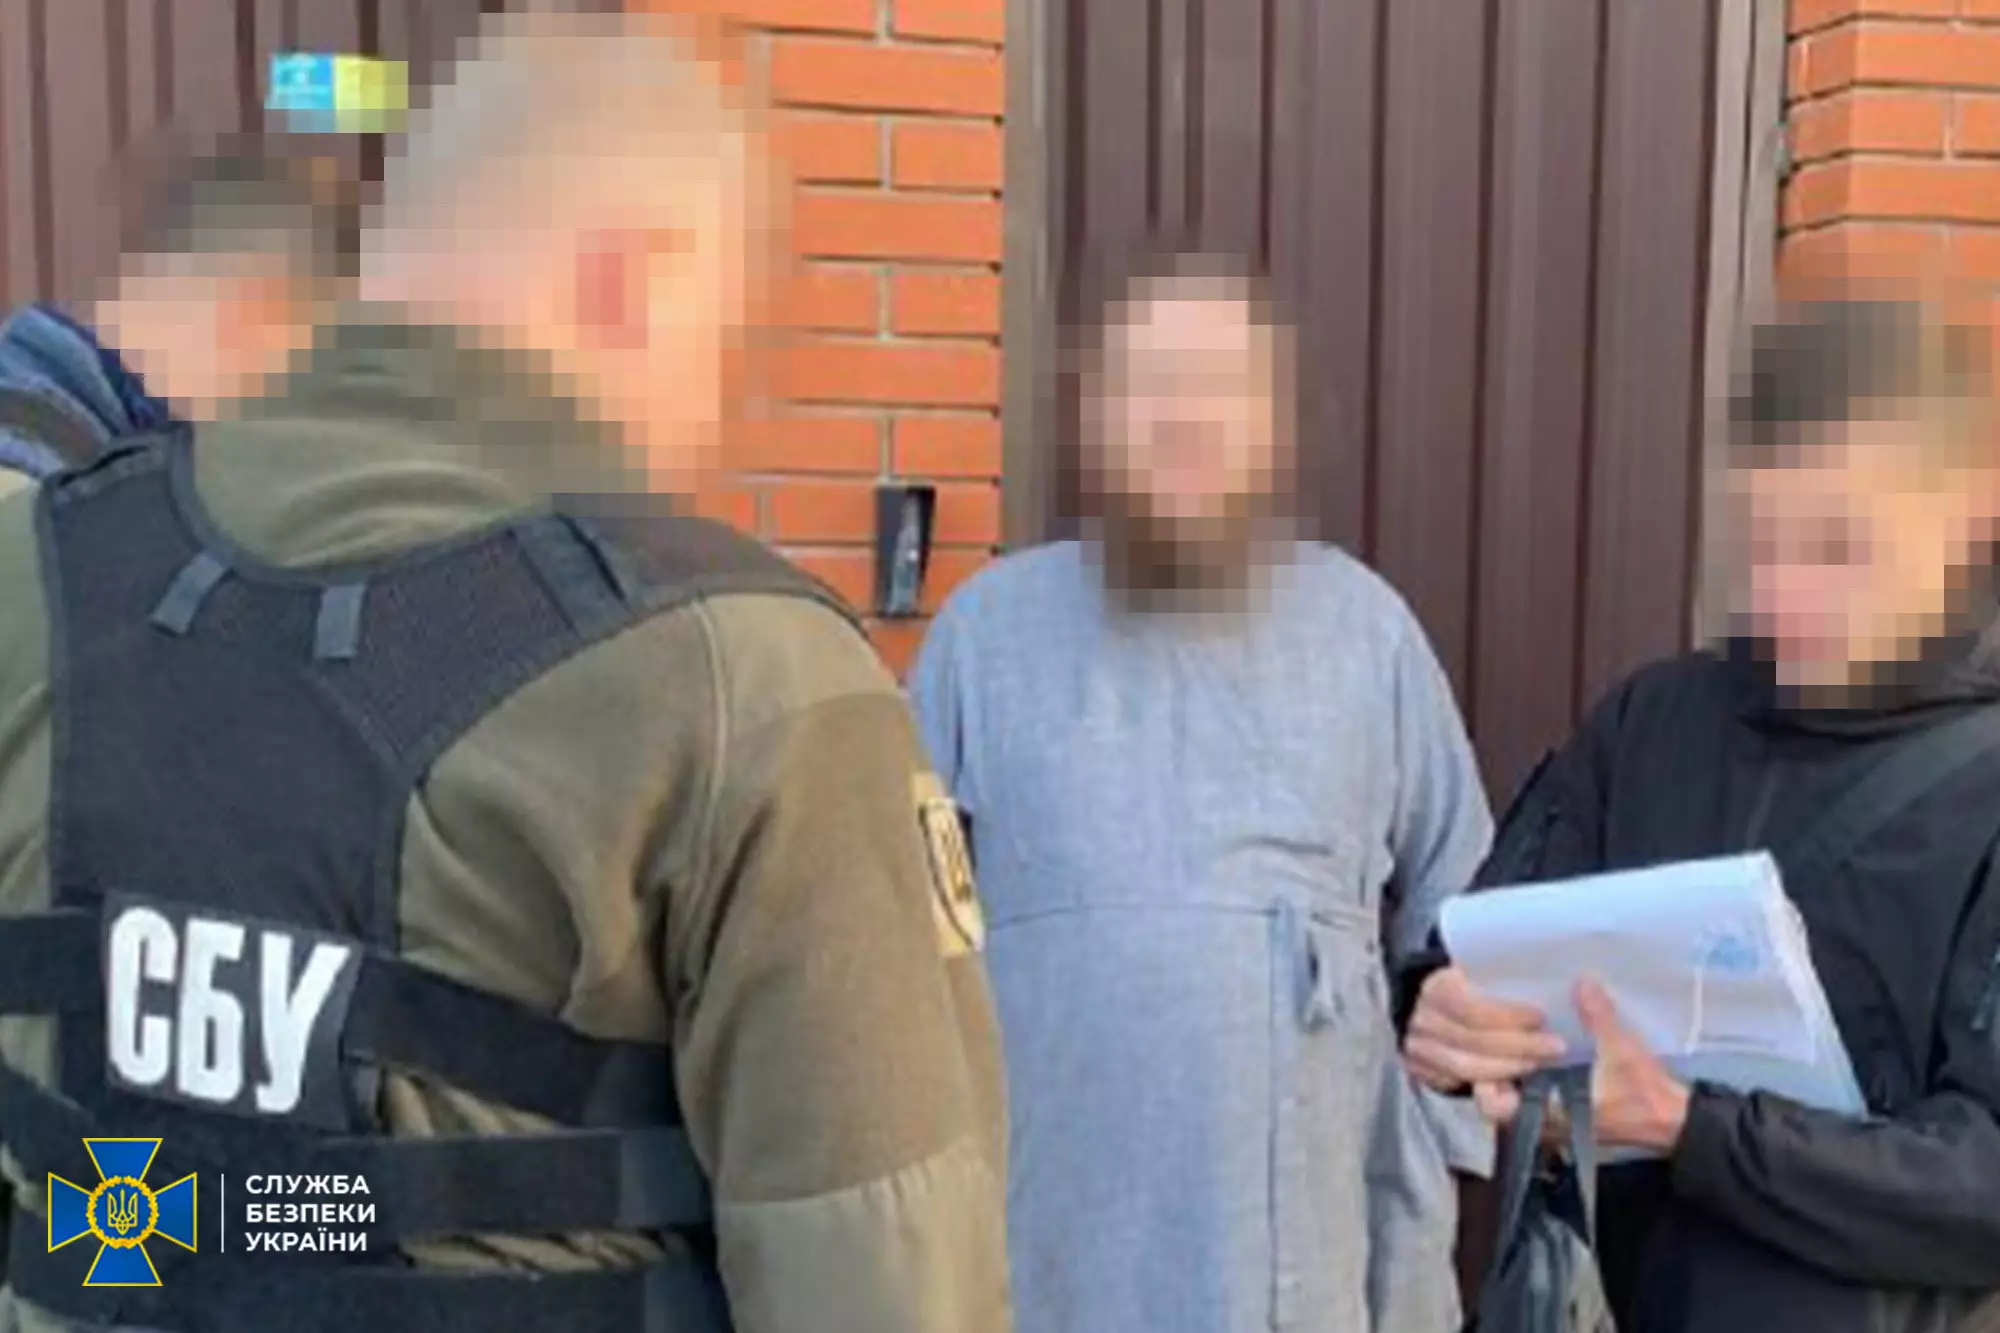 Митрополит УПЦ МП на Черкащині продовжив знімати провокативні відео під домашнім арештом і отримав нову підозру